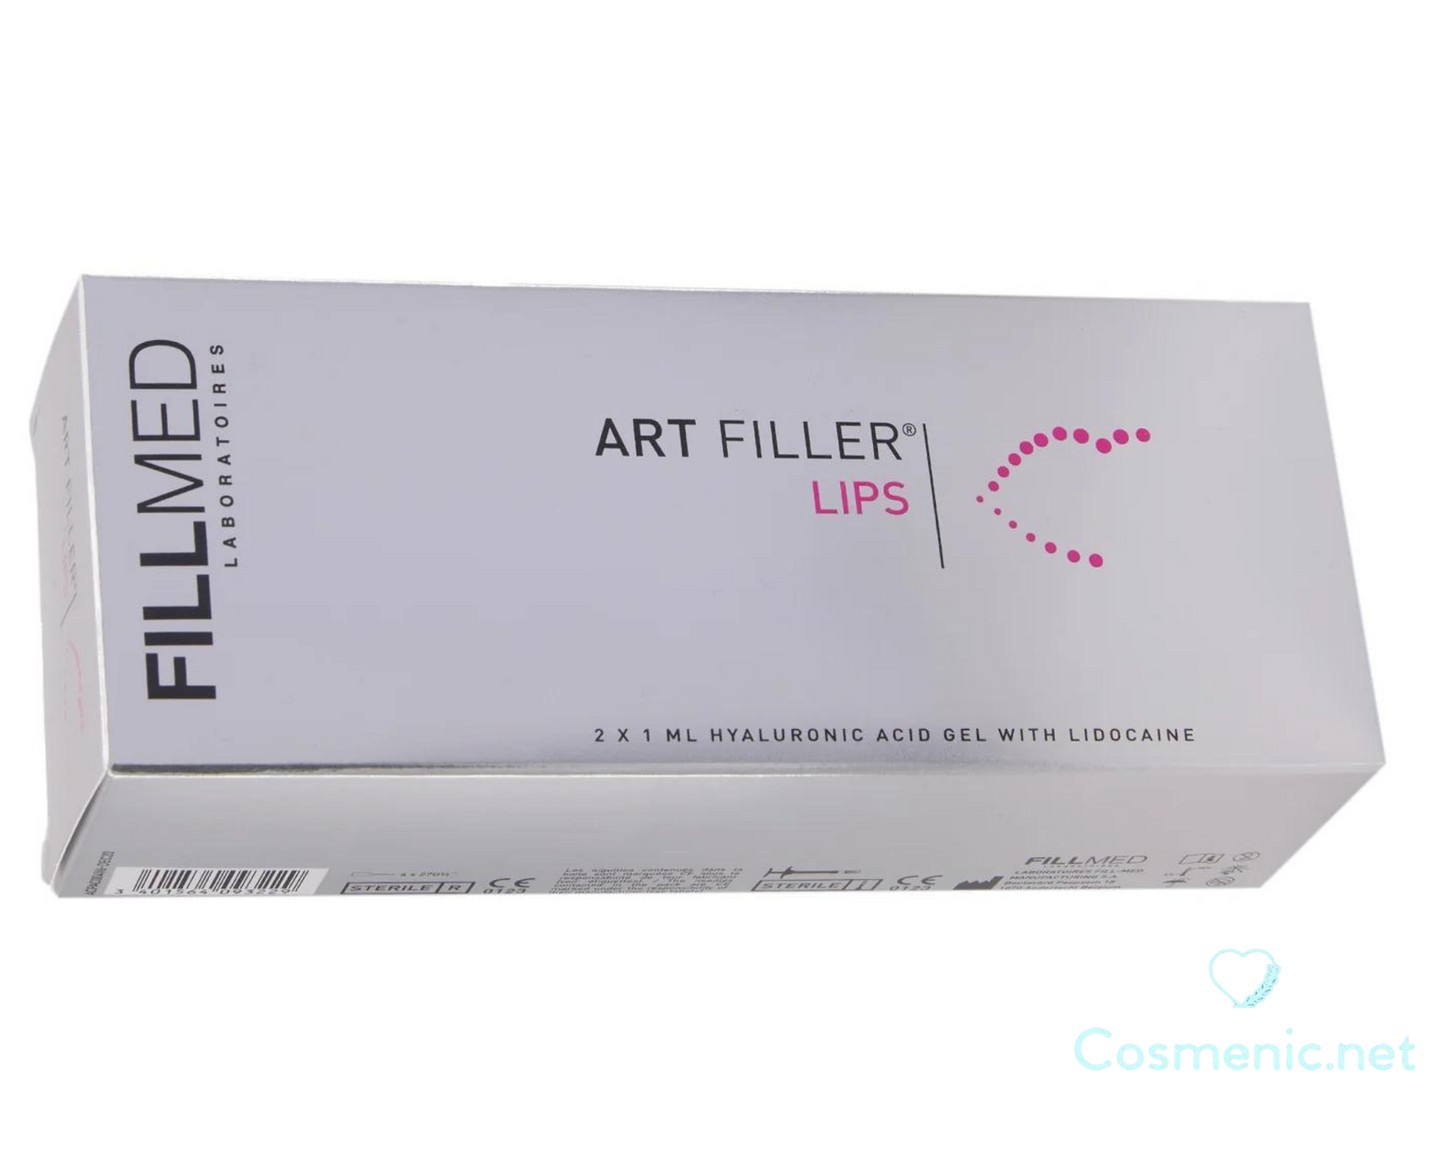 Art Filler Lips with Lidocaine 2x1ml